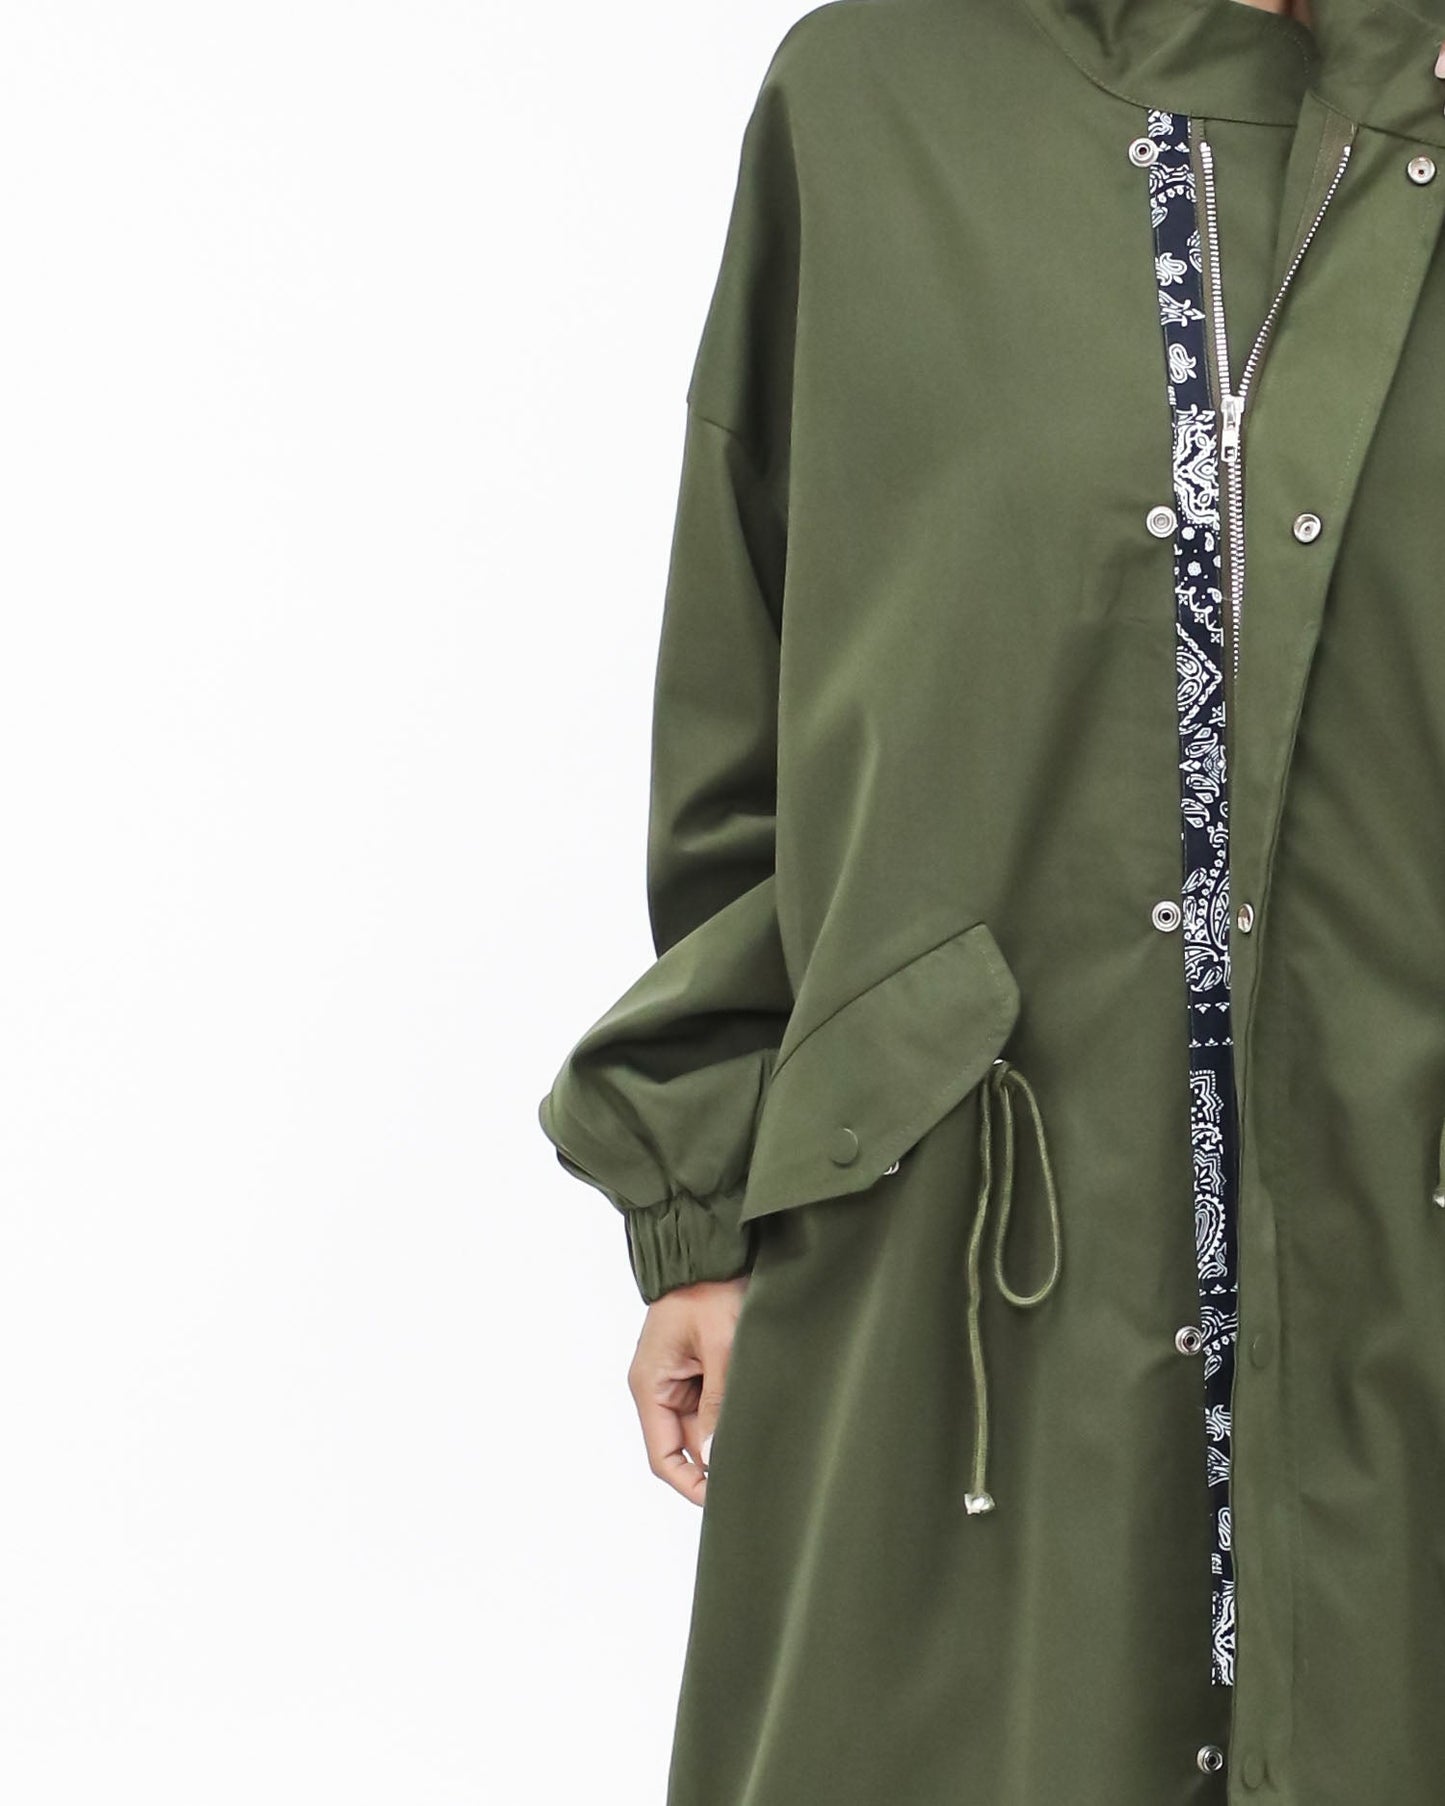 green & navy printed longline jacket *pre-order*